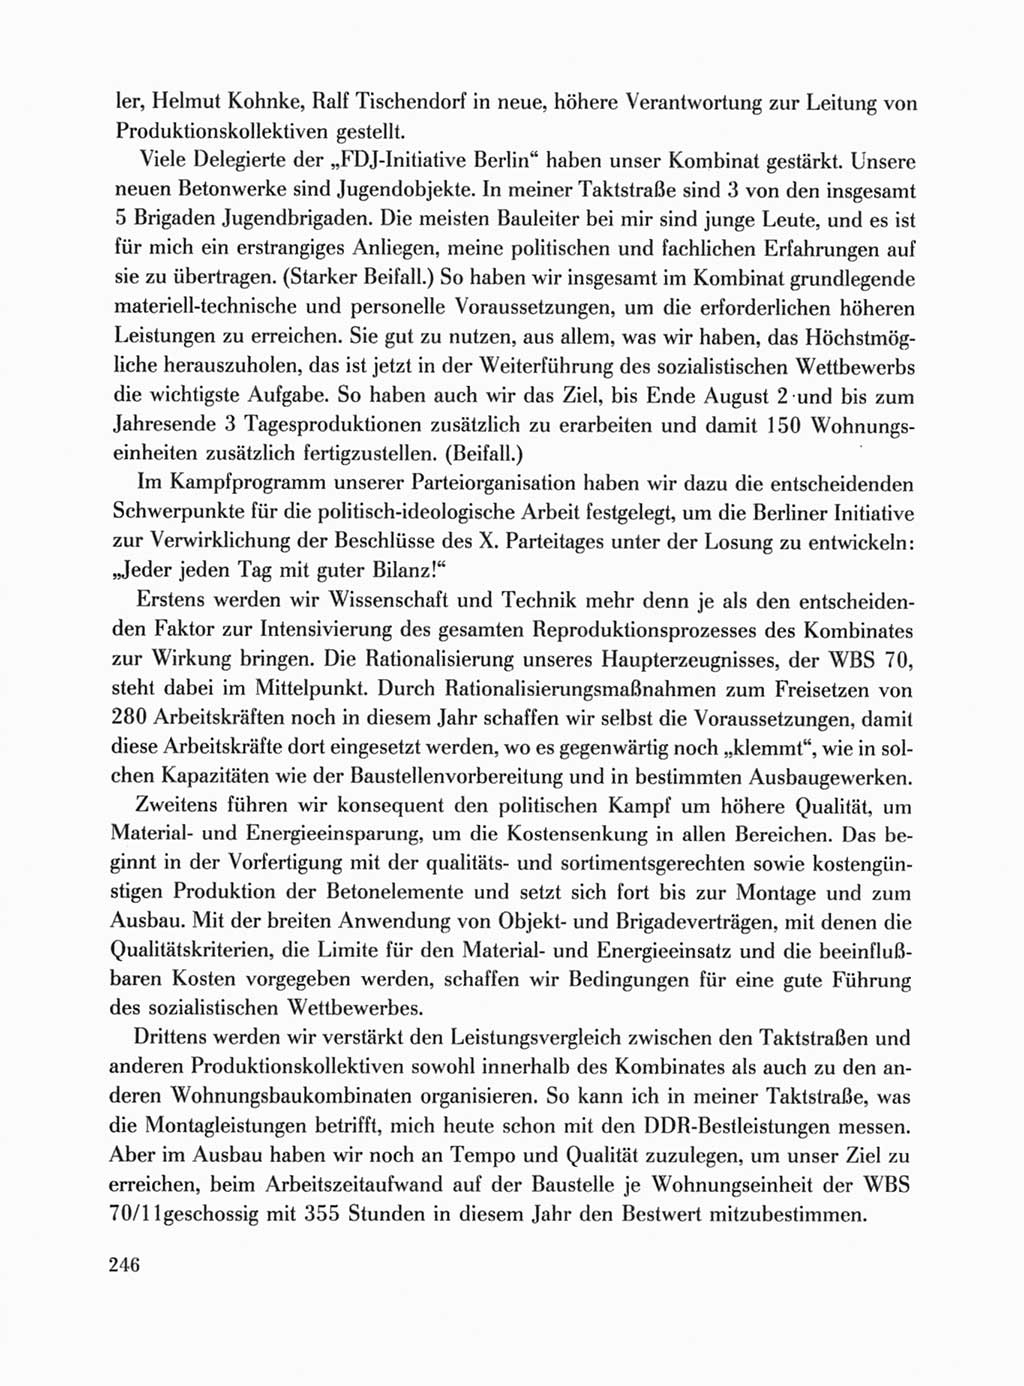 Protokoll der Verhandlungen des Ⅹ. Parteitages der Sozialistischen Einheitspartei Deutschlands (SED) [Deutsche Demokratische Republik (DDR)] 1981, Band 1, Seite 246 (Prot. Verh. Ⅹ. PT SED DDR 1981, Bd. 1, S. 246)